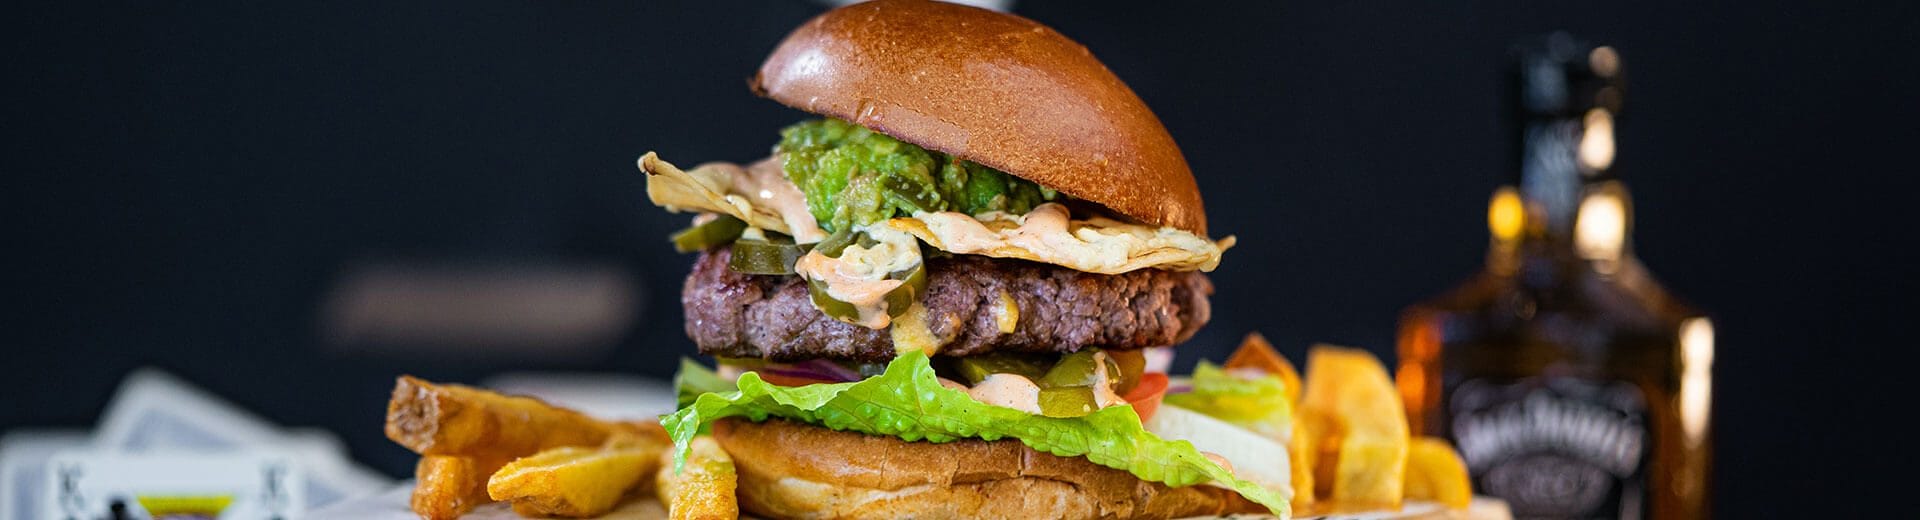 Le vere origini dell’hamburger tra miti e leggende